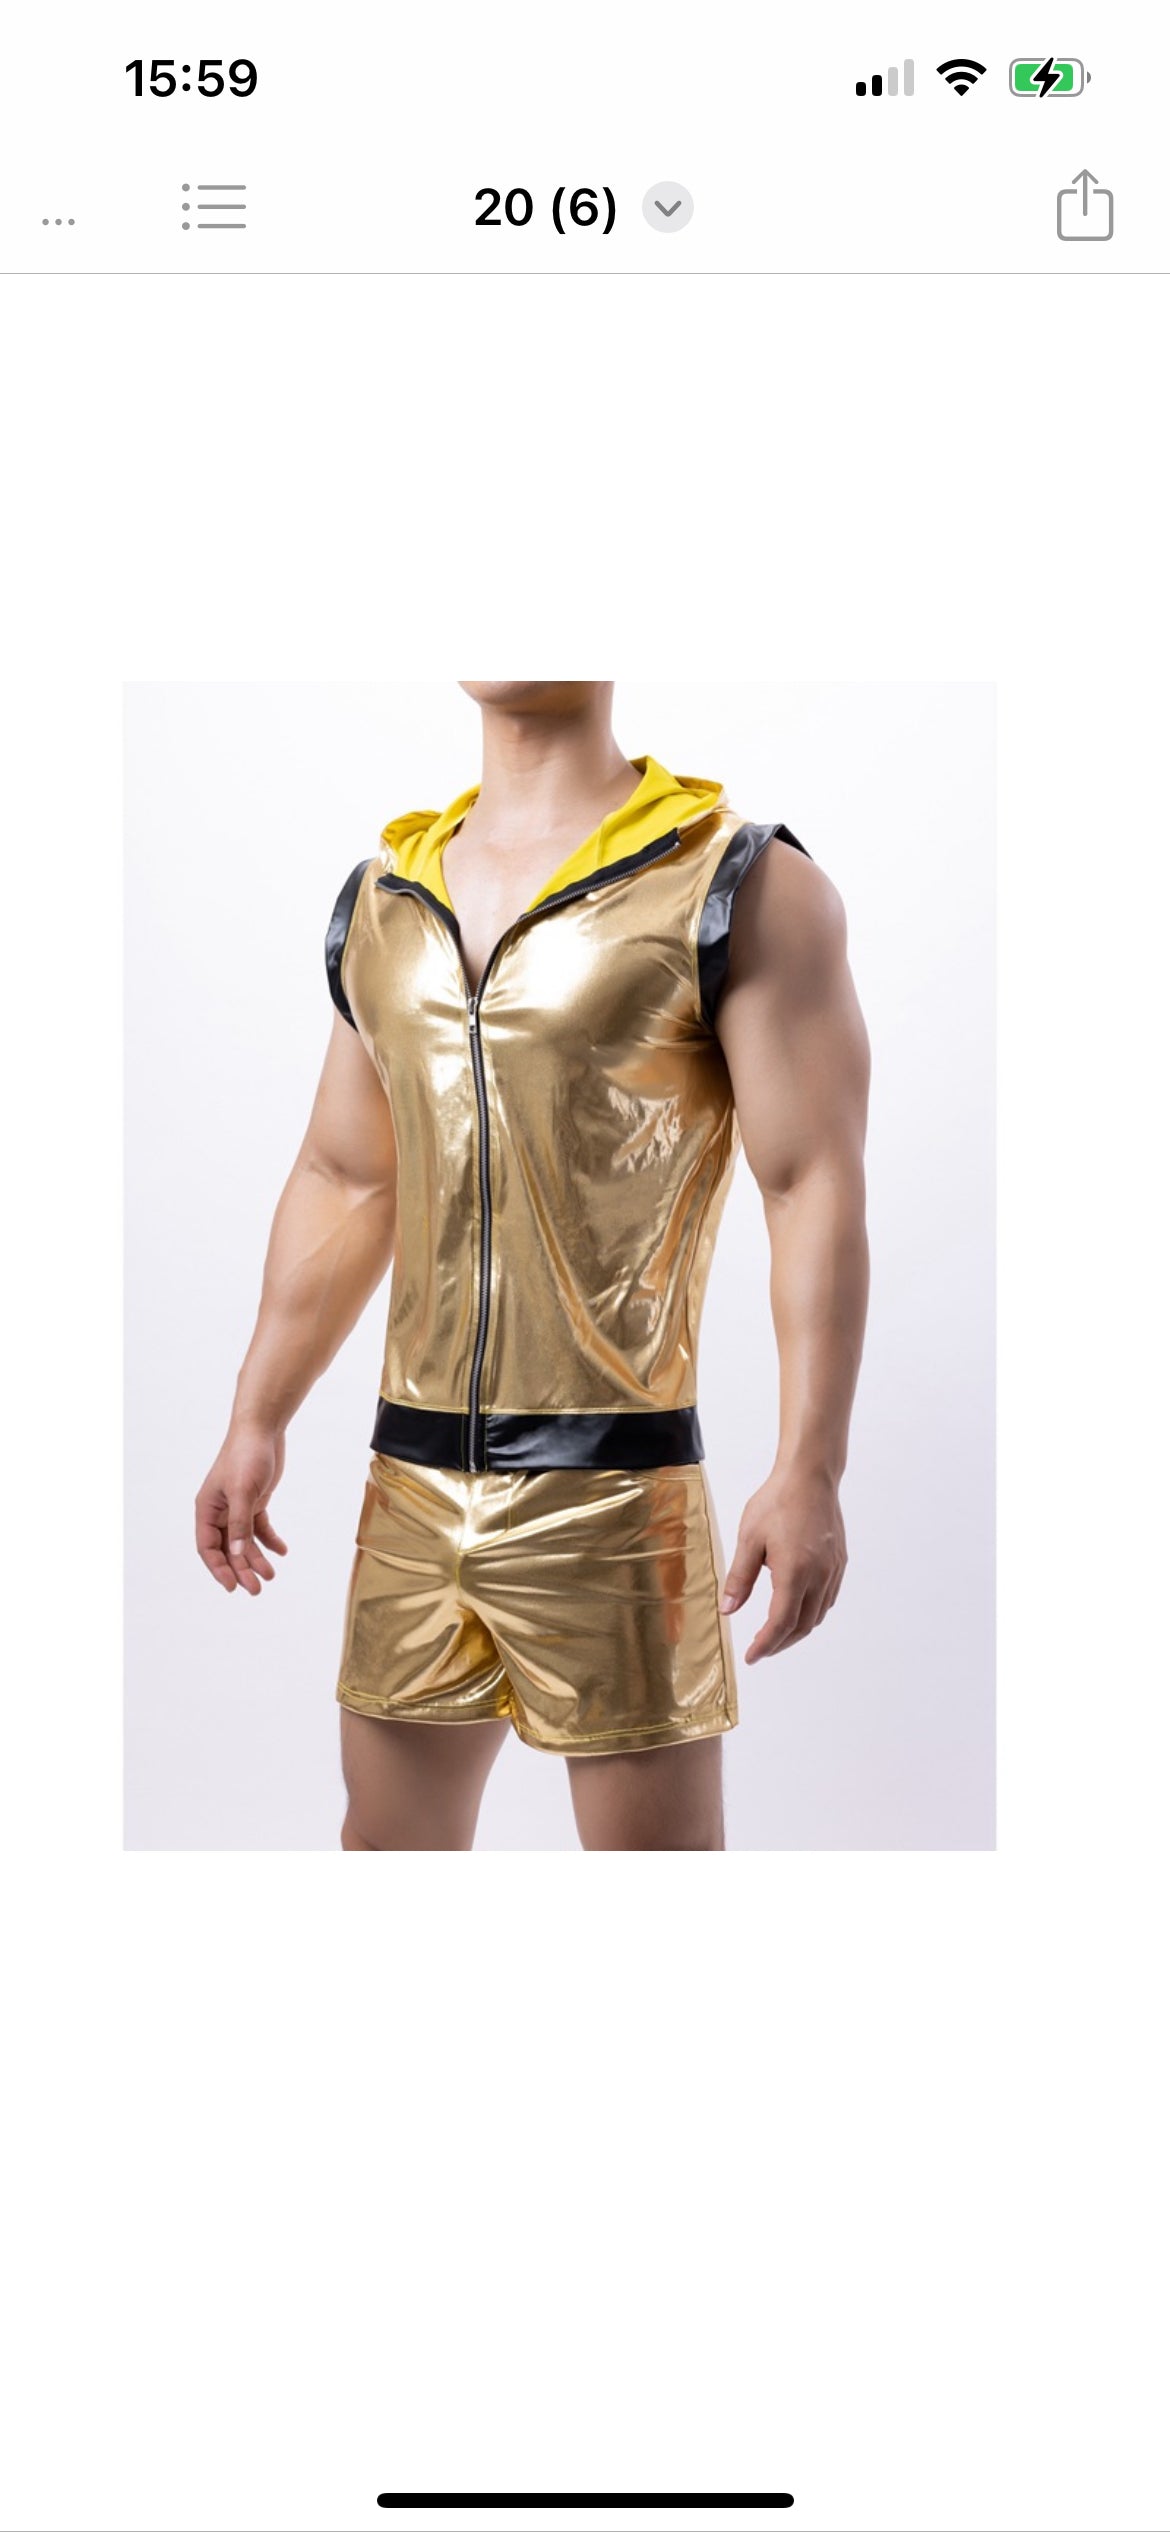 Guldfärgat partyset eller festdräkt, armlös hoodie och shorts i guld